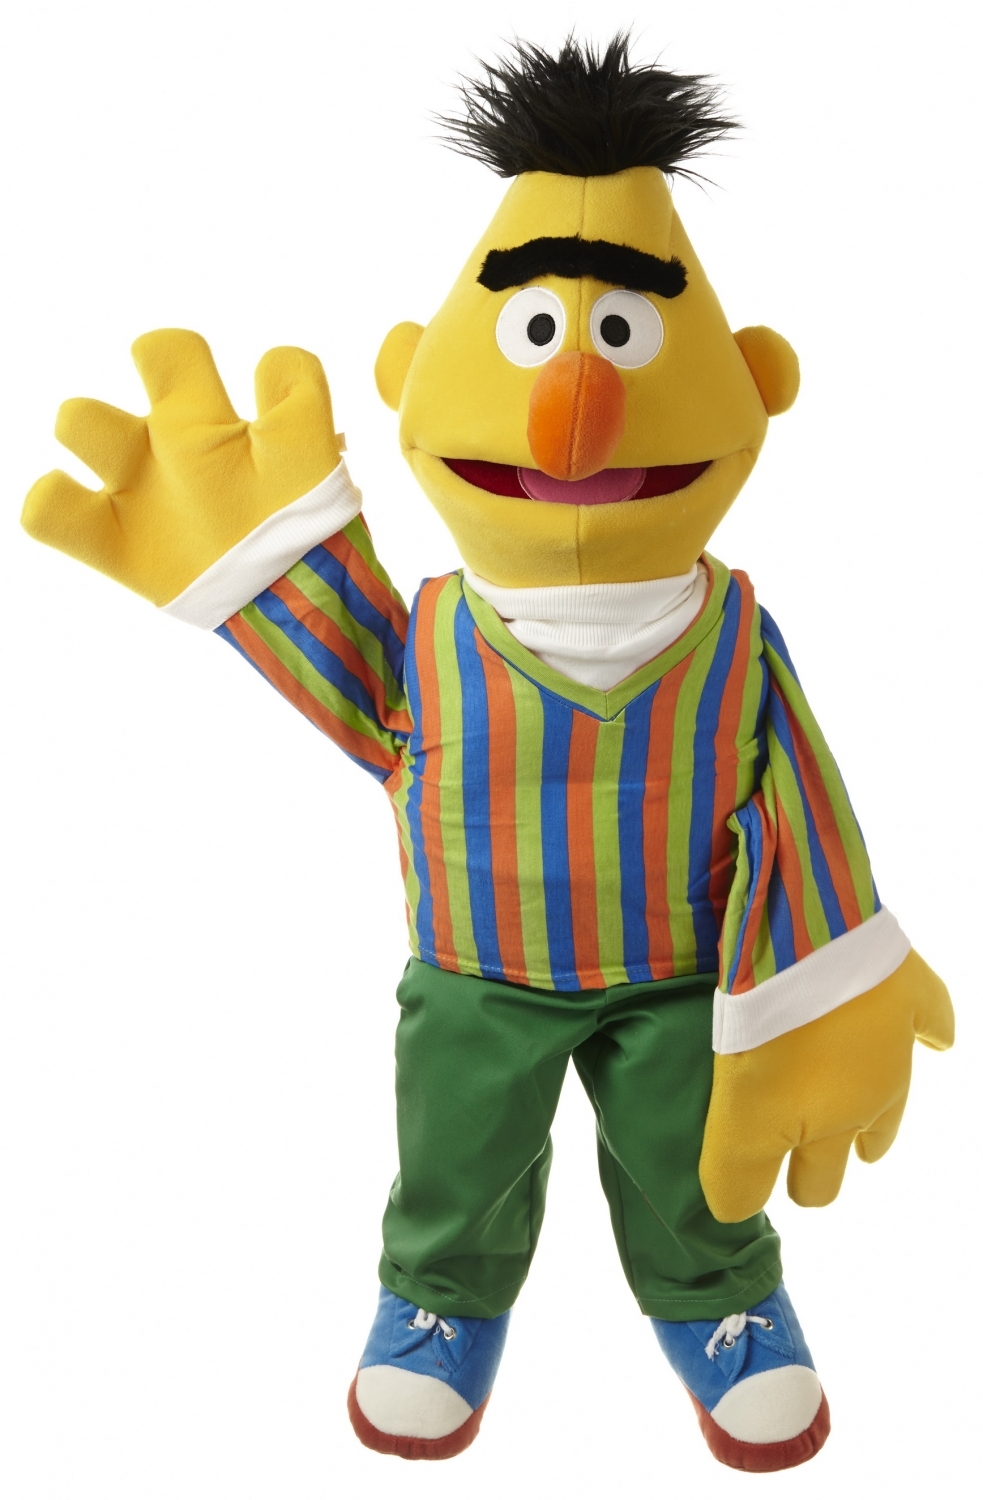 ethiek Assimileren royalty Bert en Ernie handpop, Bert van Sesamstraat, Living Puppets handpop Bert